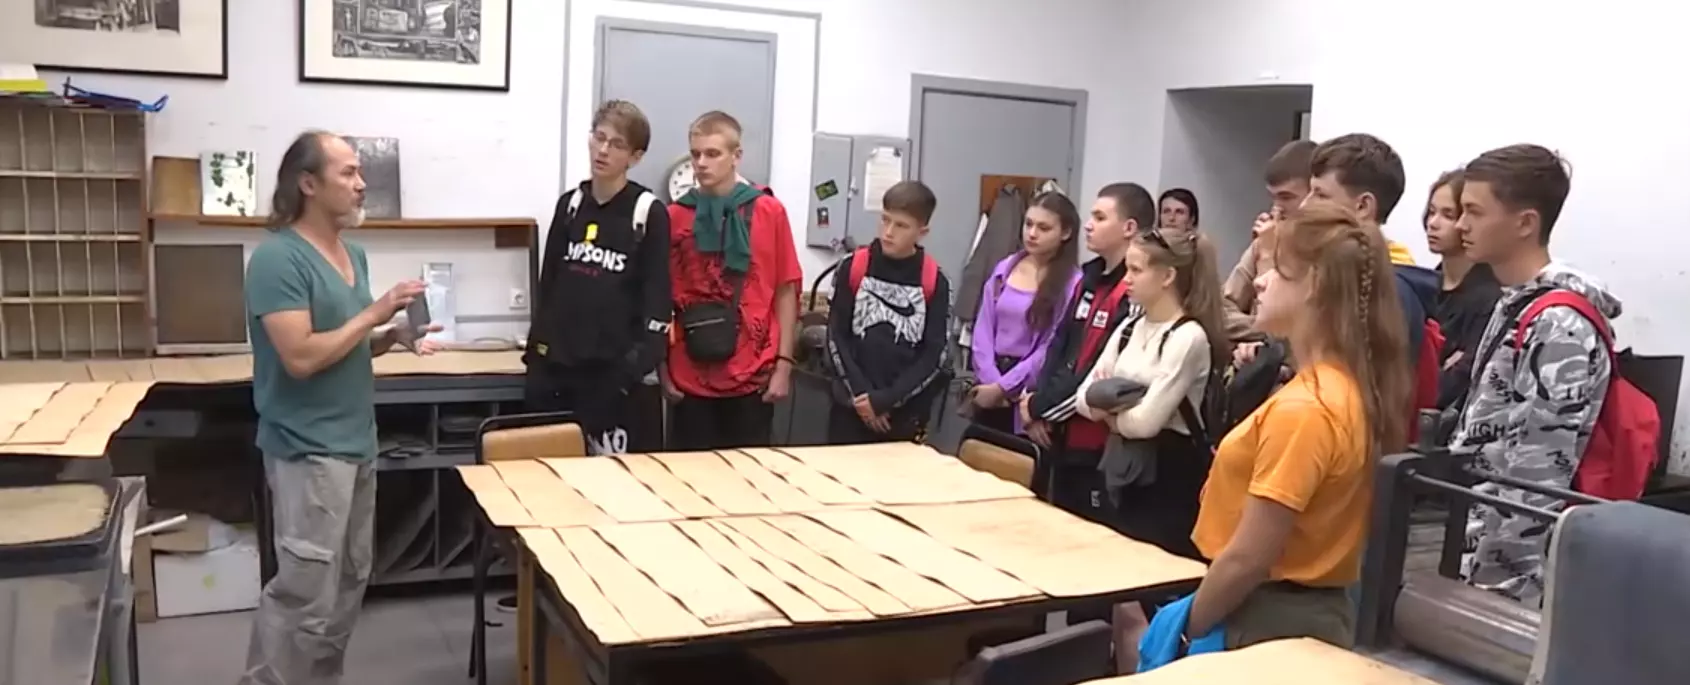 Университетская смена для школьников Донбасса проводится в Академии Штиглица